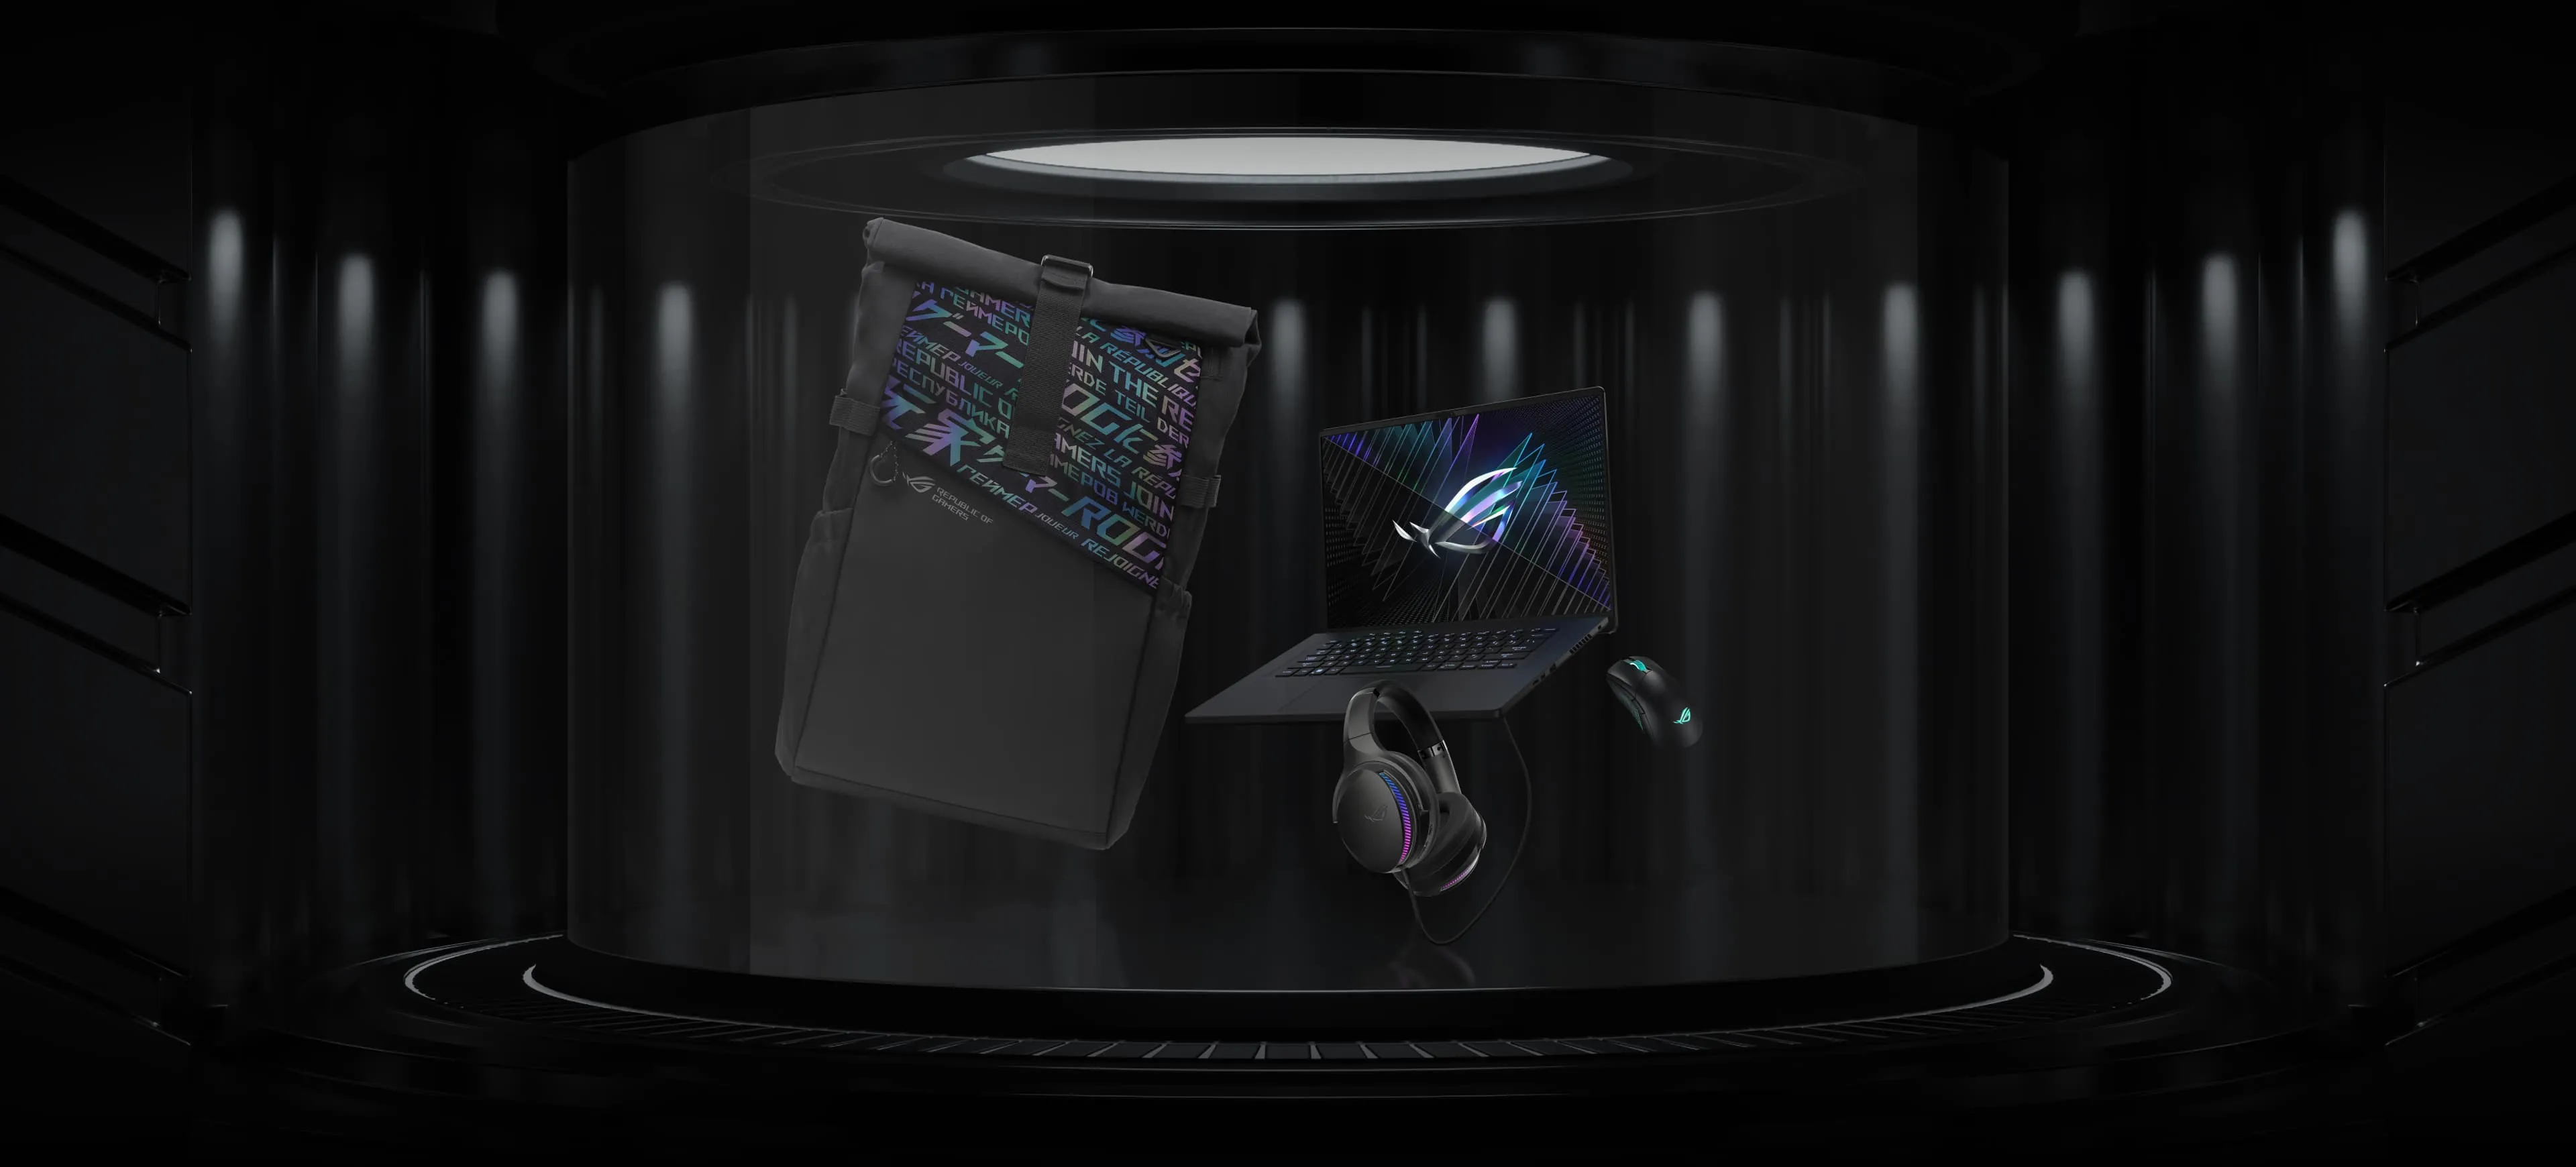 Изображение с ноутбуком ROG Zephyrus M16, рюкзаком ROG Ranger, мышкой Gladius III и гарнитурой ROG Fusion II 300. 